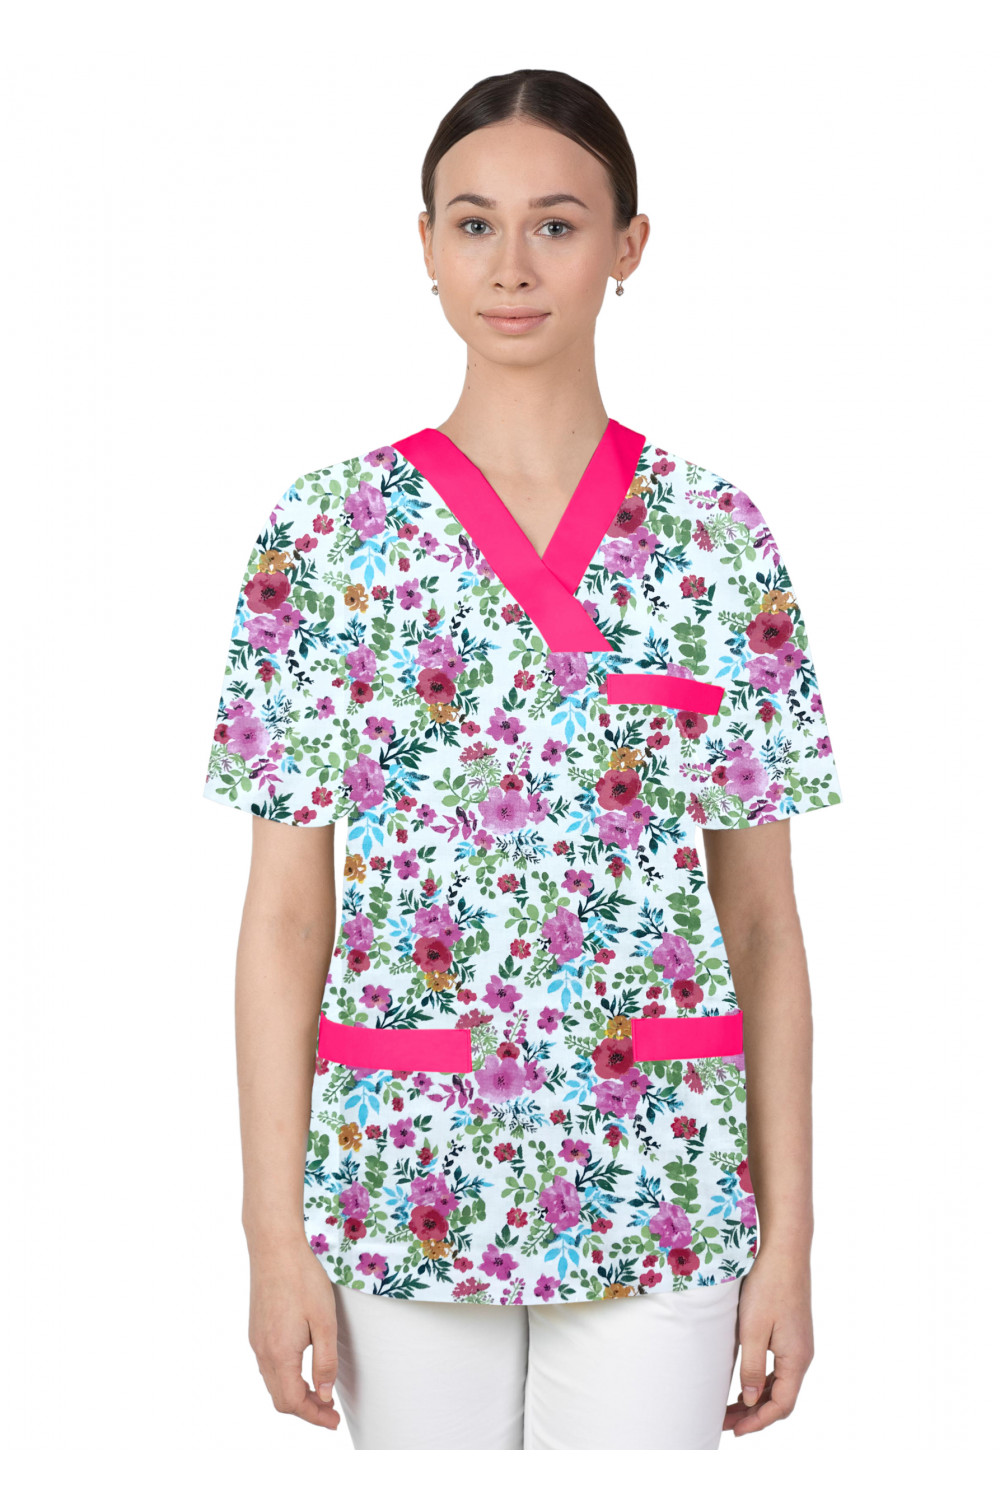 Bluza medyczna we wzorki kolorowa damska M-074G kwiaty maki kolorowe na białym tle